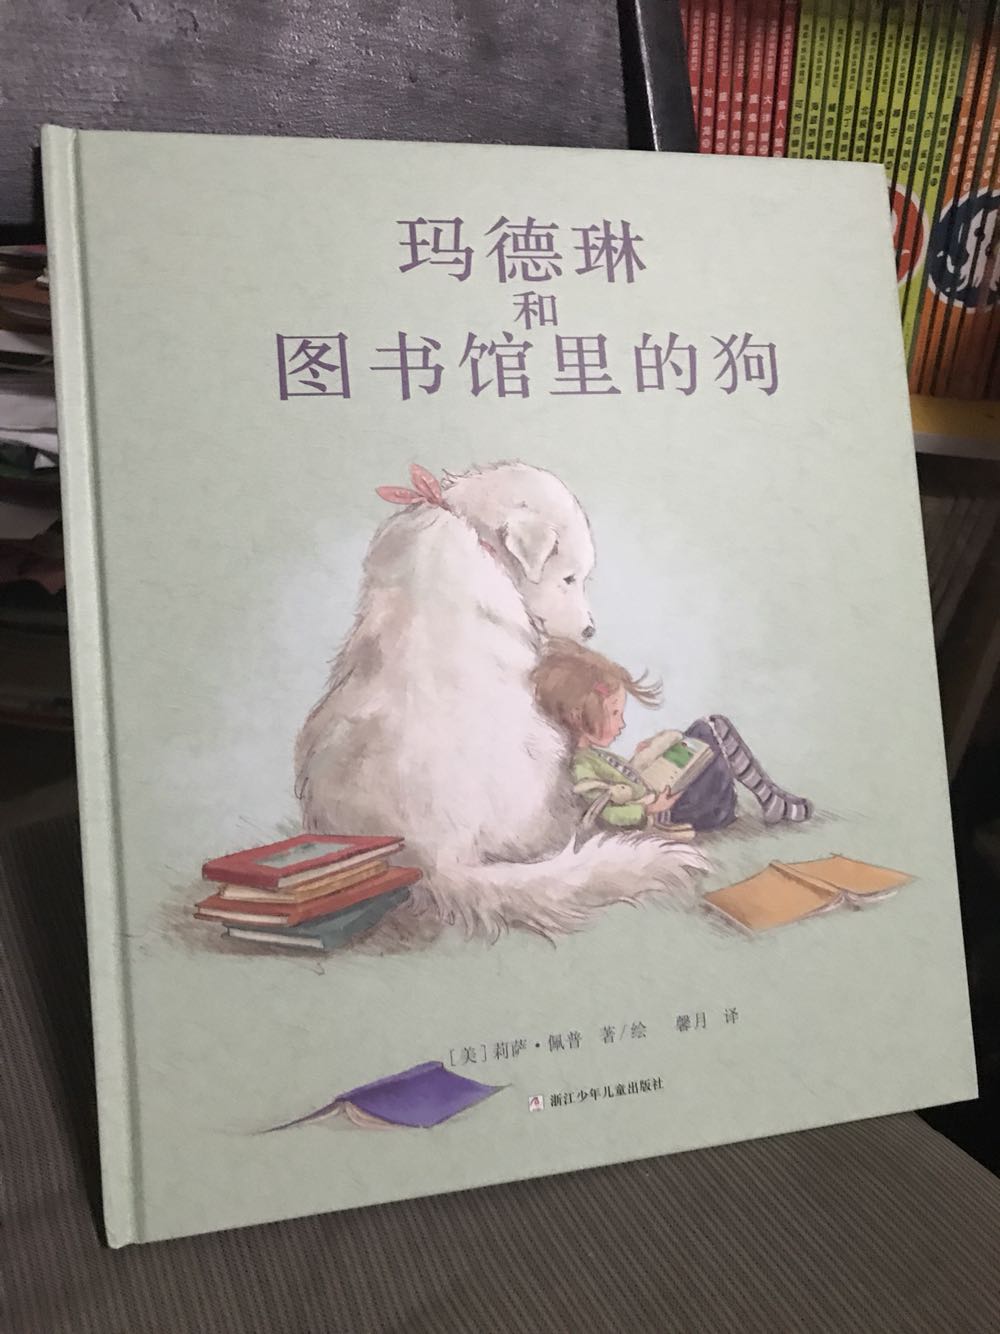 这本孩子最先要读的，动物和小孩最亲近呀，一个独特温暖的故事，孩子特别喜欢小狗，读来哈哈大笑！不错！